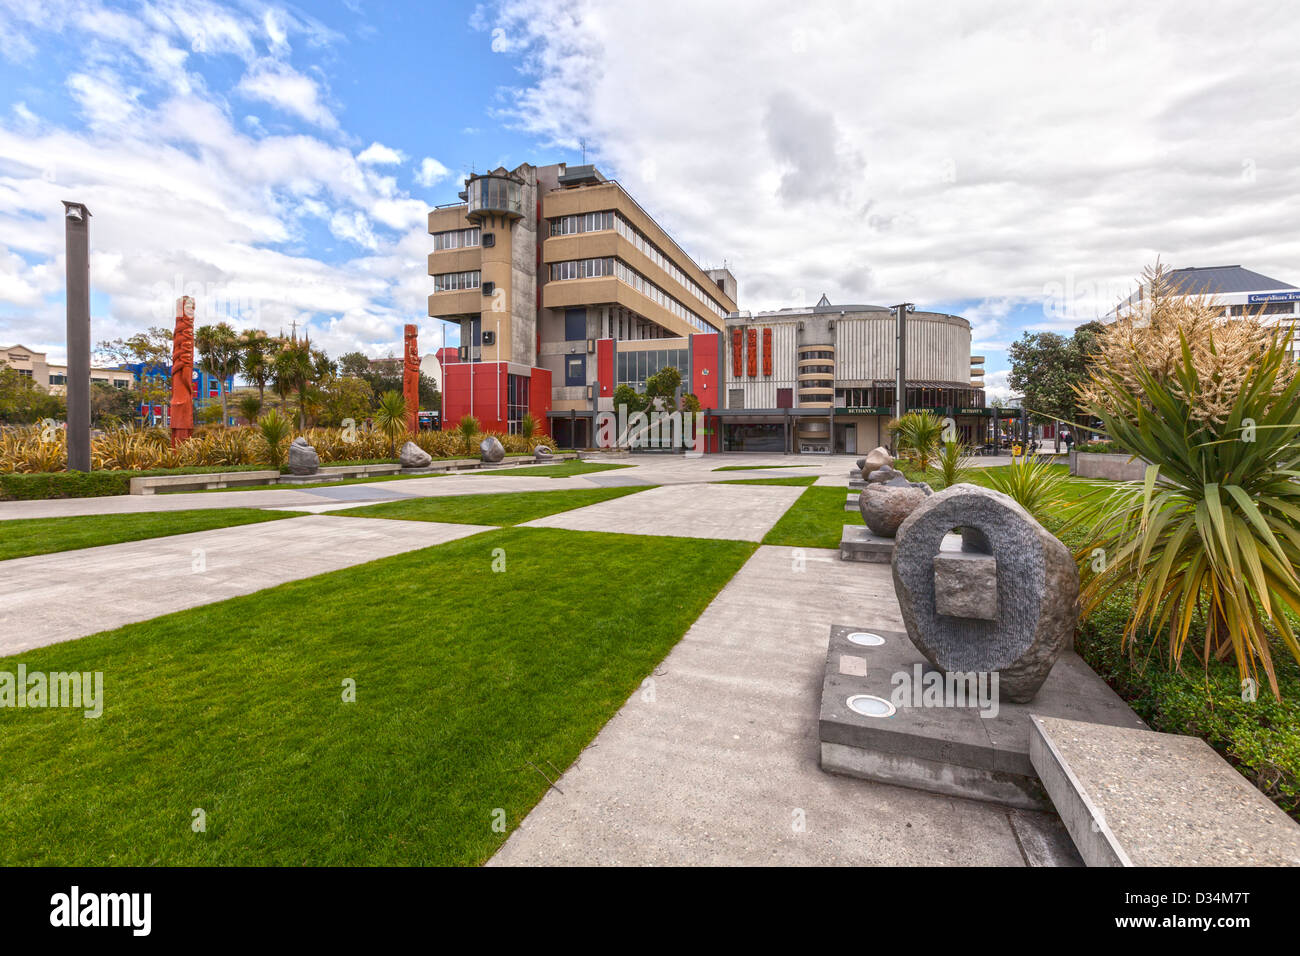 La piazza di Palmerston North, Manawatu Affitto, Nuova Zelanda, con gli uffici del Comune. Foto Stock